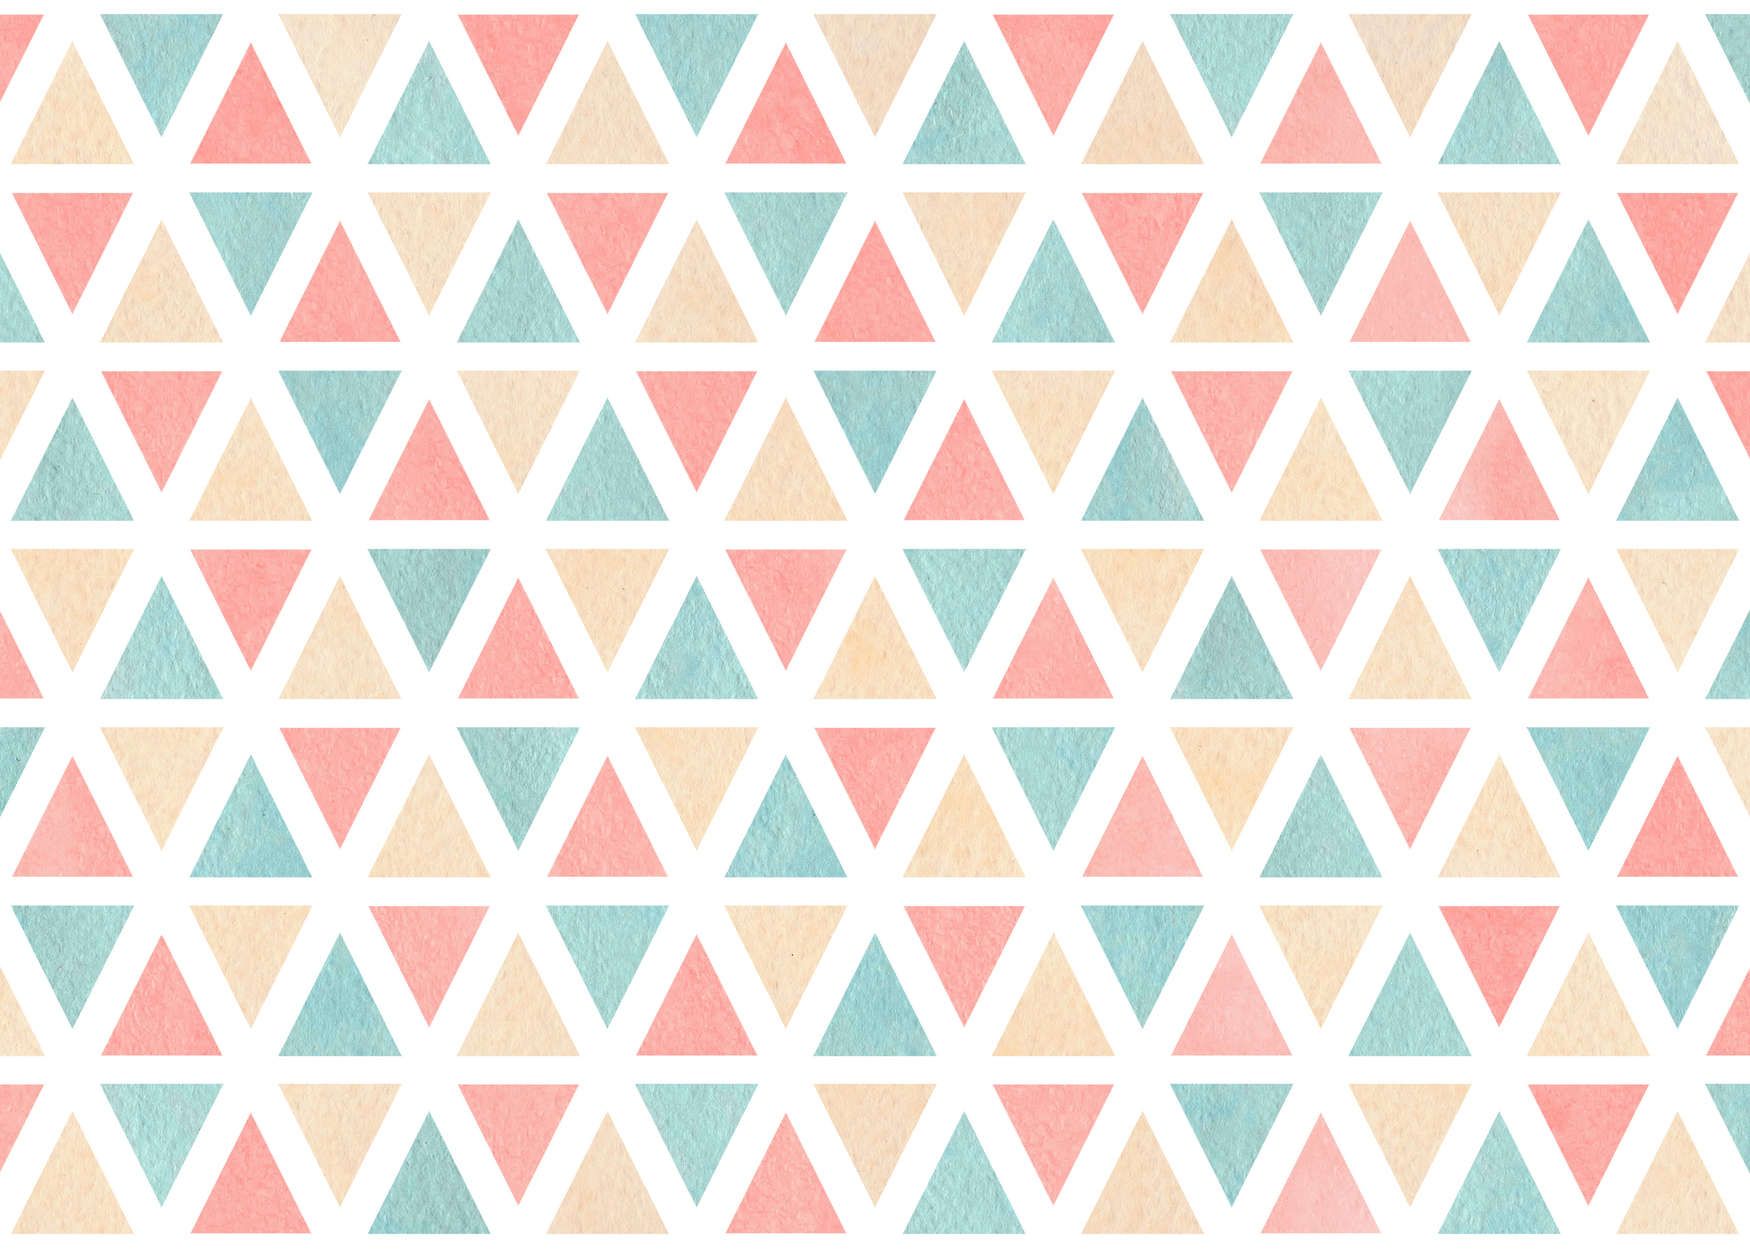             Fotomural con motivo gráfico de triángulos de colores - Material sin tejer liso y ligeramente brillante
        